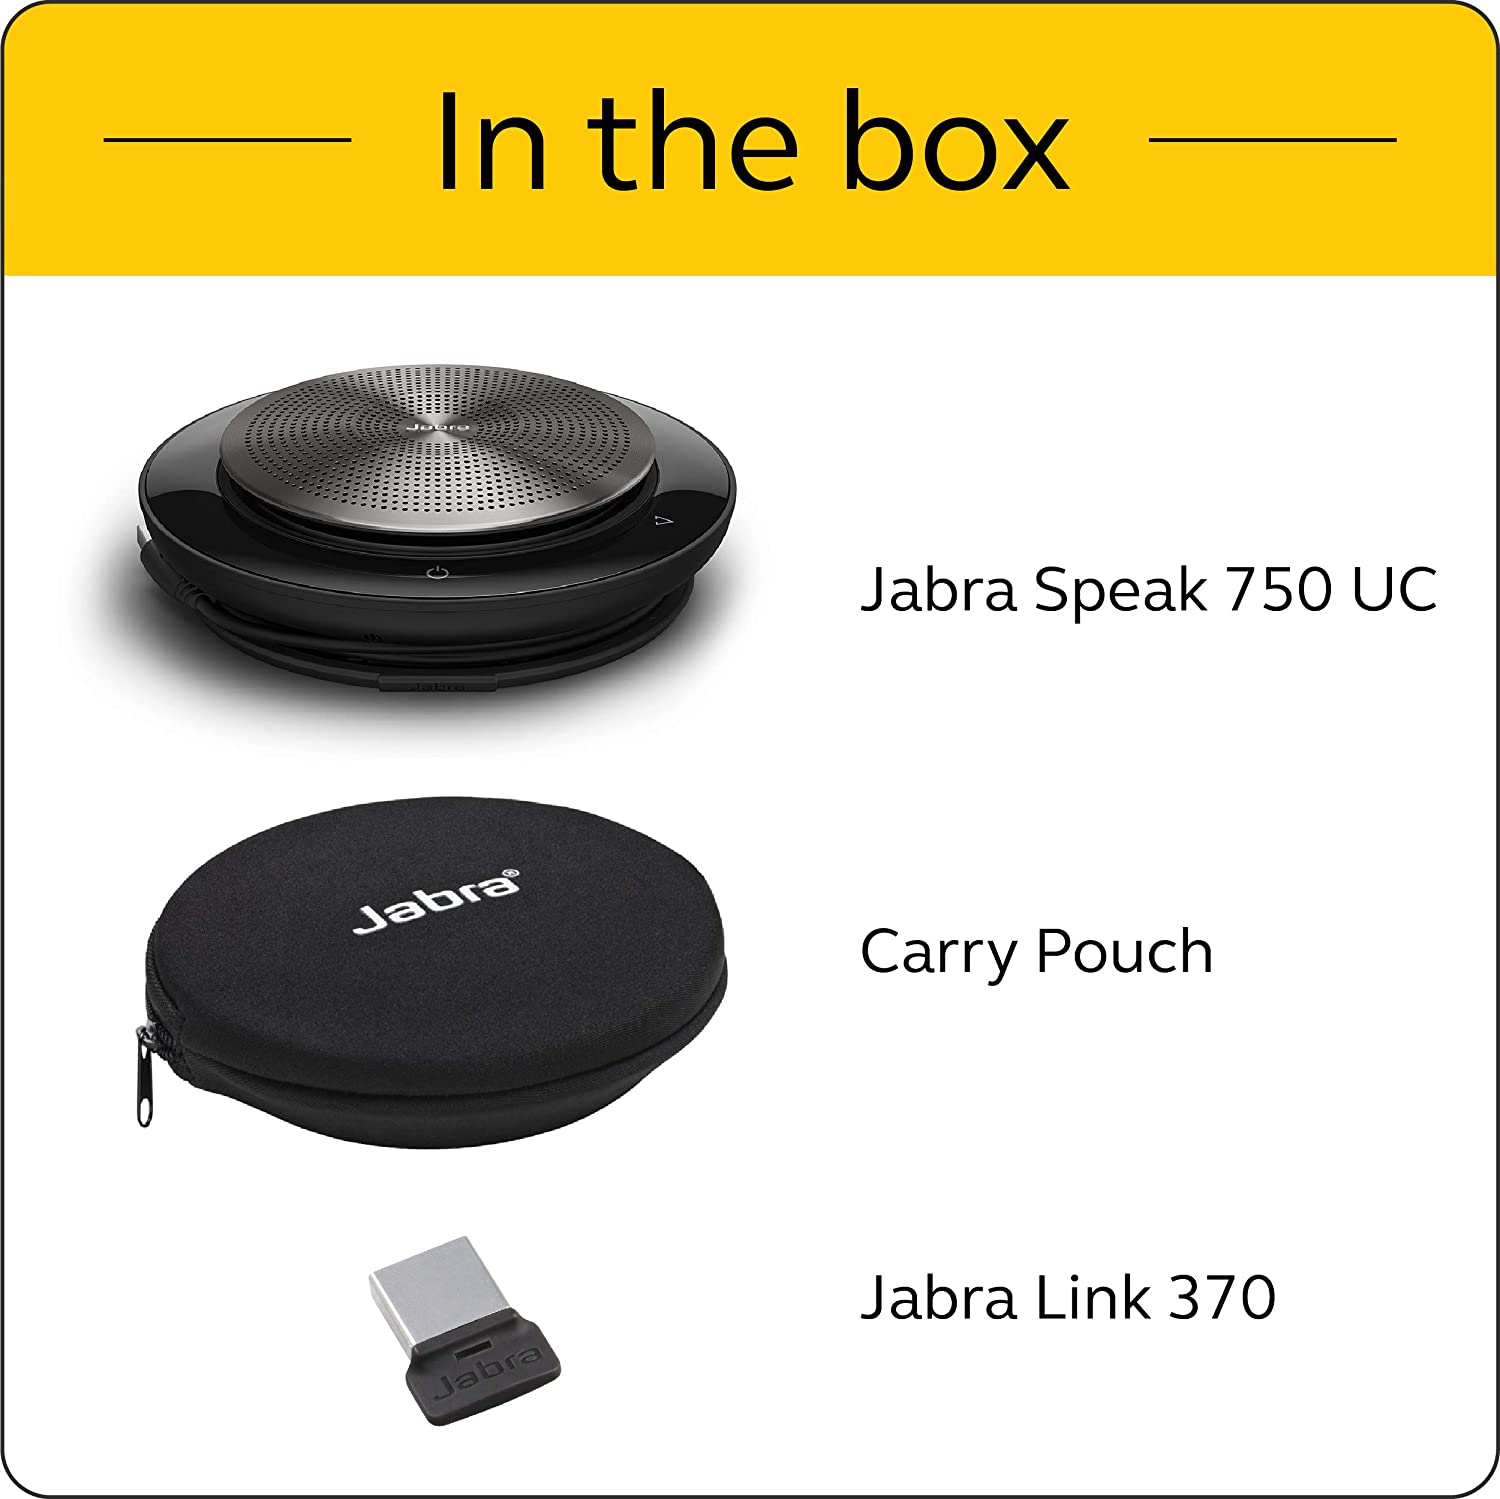 Jabra Speak USB UC 750 7700-409 Conference Speakerphone Bluetooth 